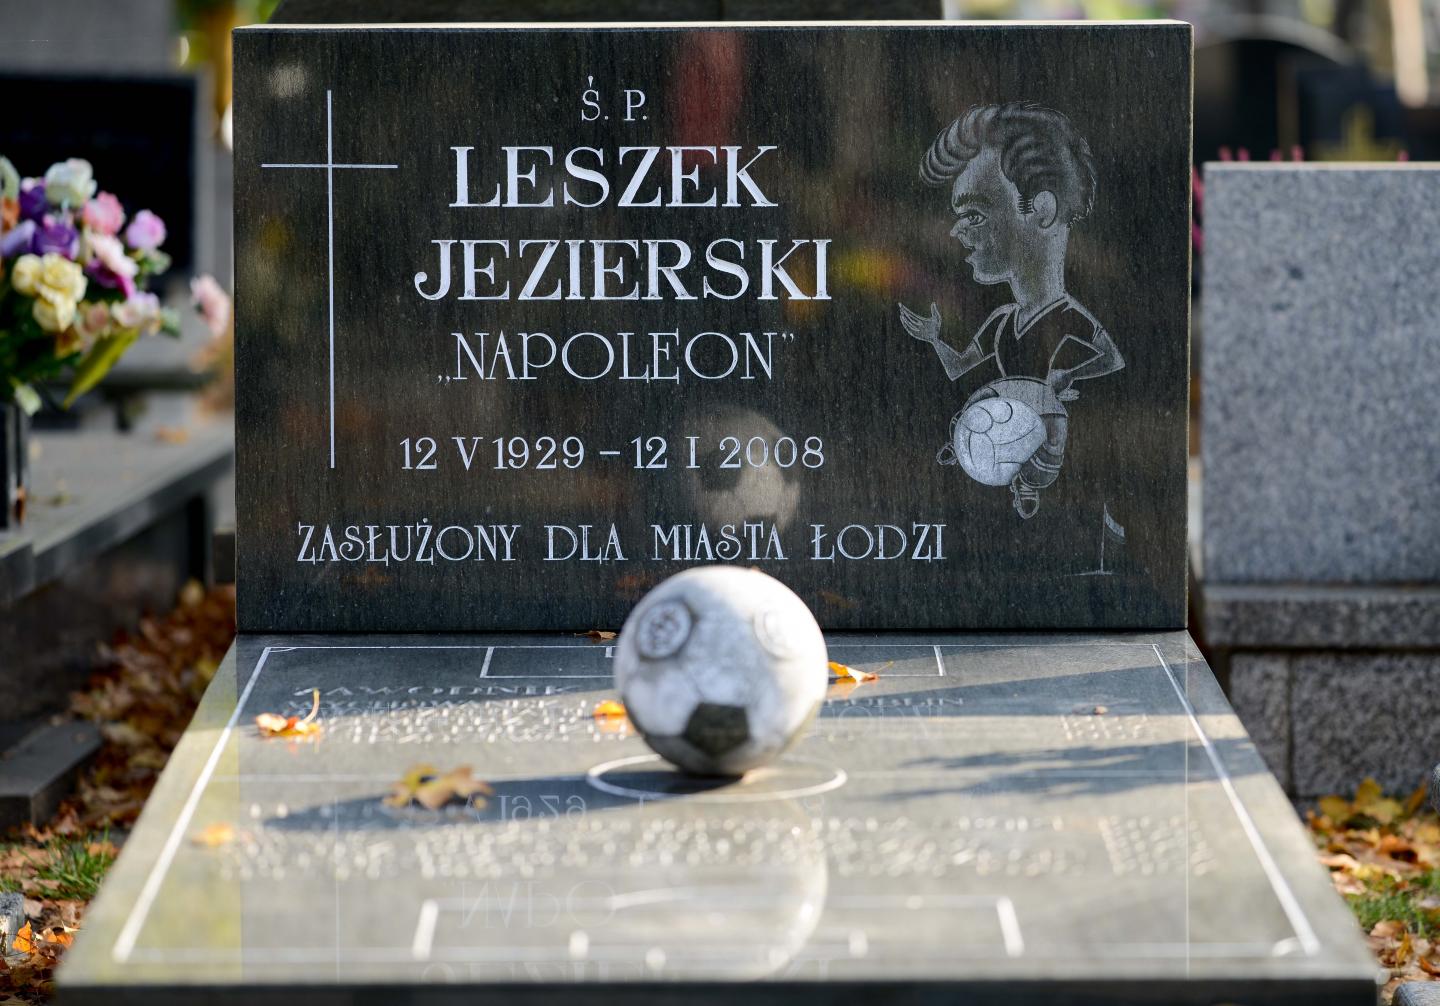 Leszek Jezierski